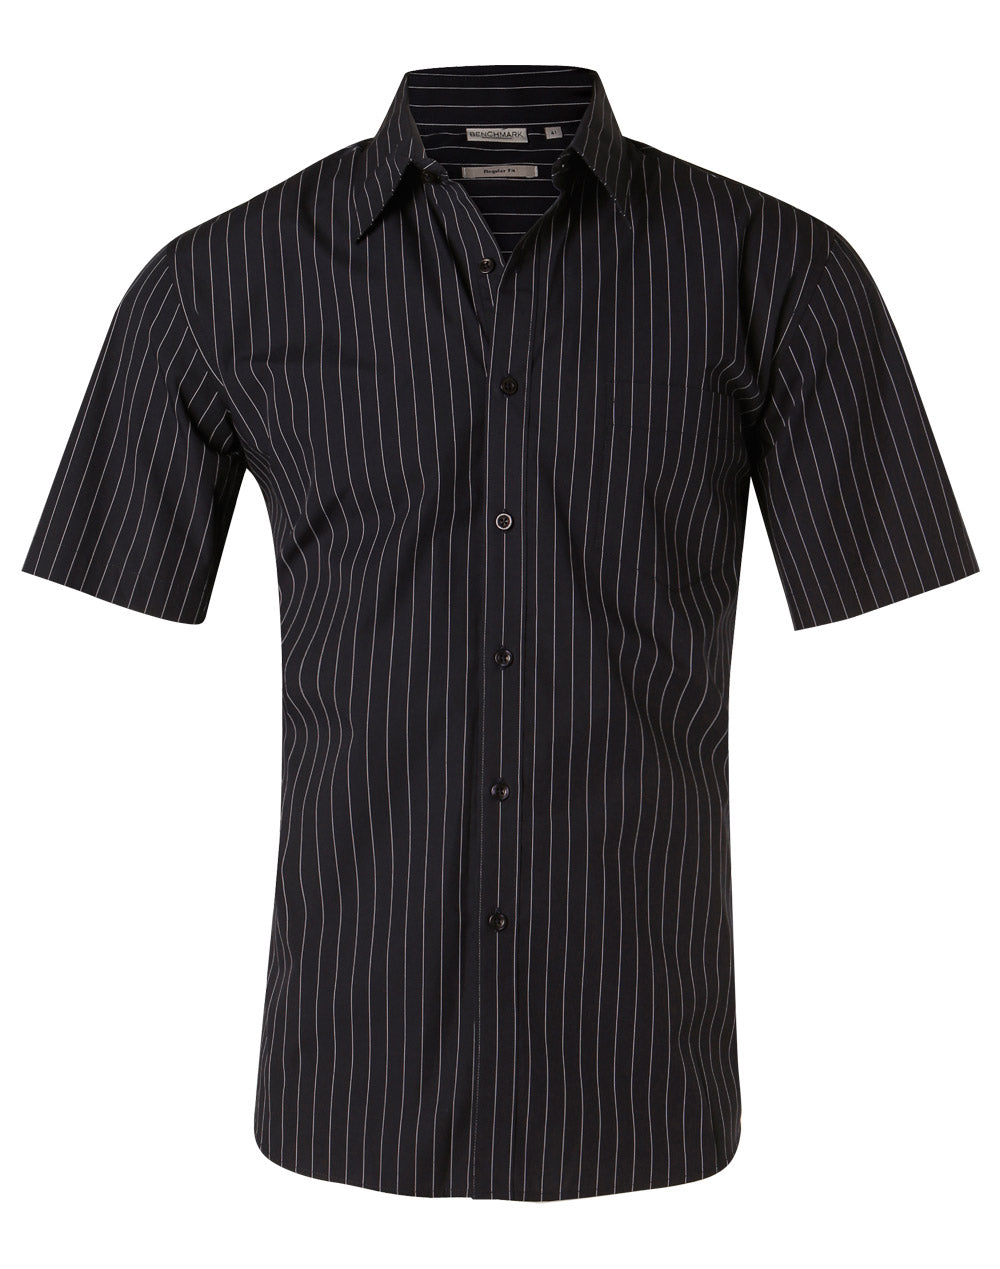 Winning Spirit Men's Pin Stripe Short Sleeve Shirt (M7221)